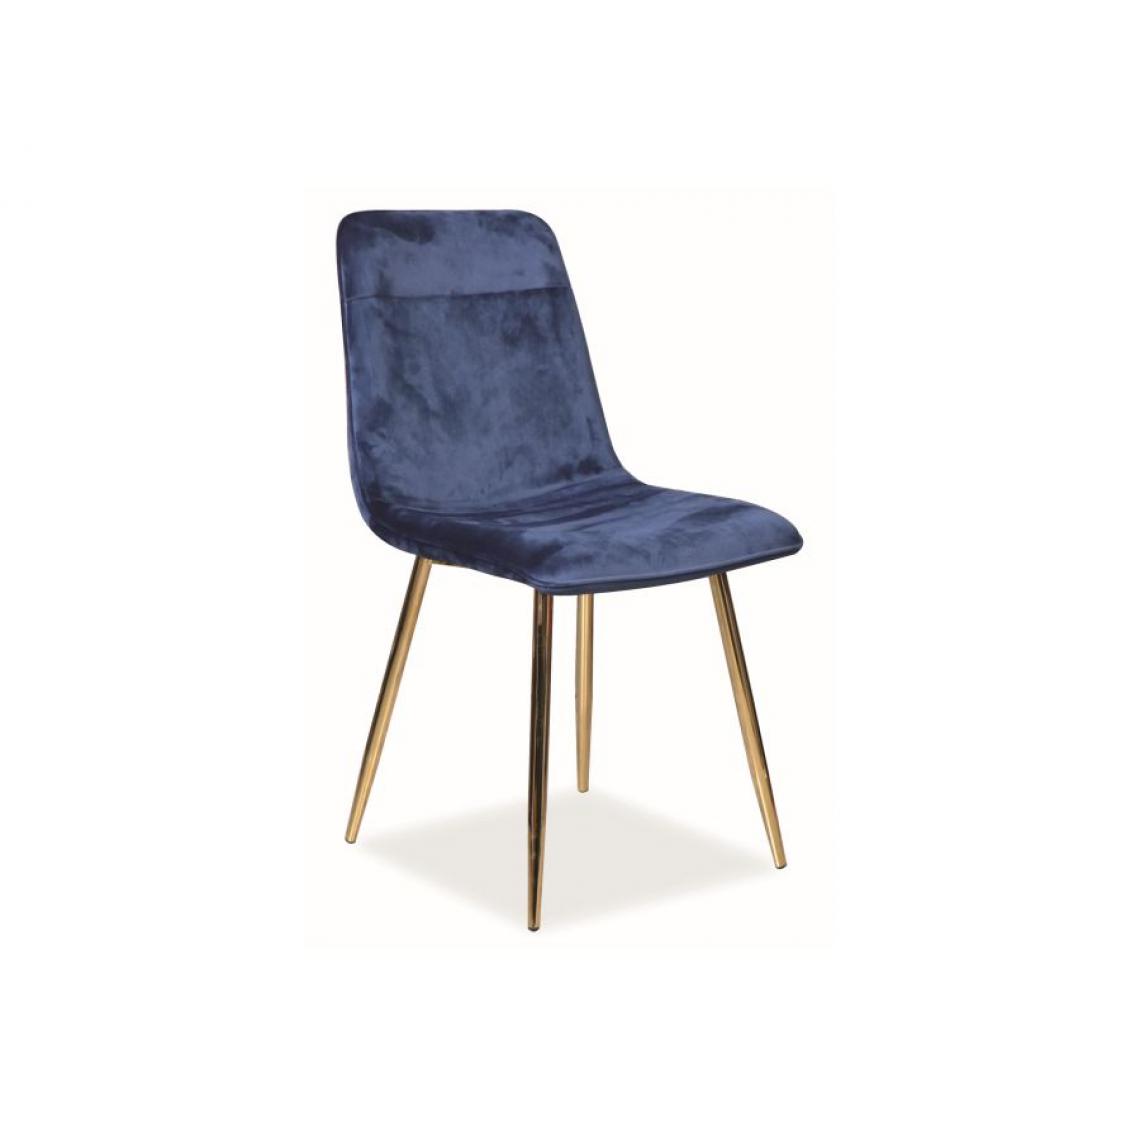 Hucoco - EROT | Chaise en velours pour salon salle à manger cuisine | Dimensions 87x47x41 cm | Tissu velouté | Pieds stables en métal - Bleu - Chaises